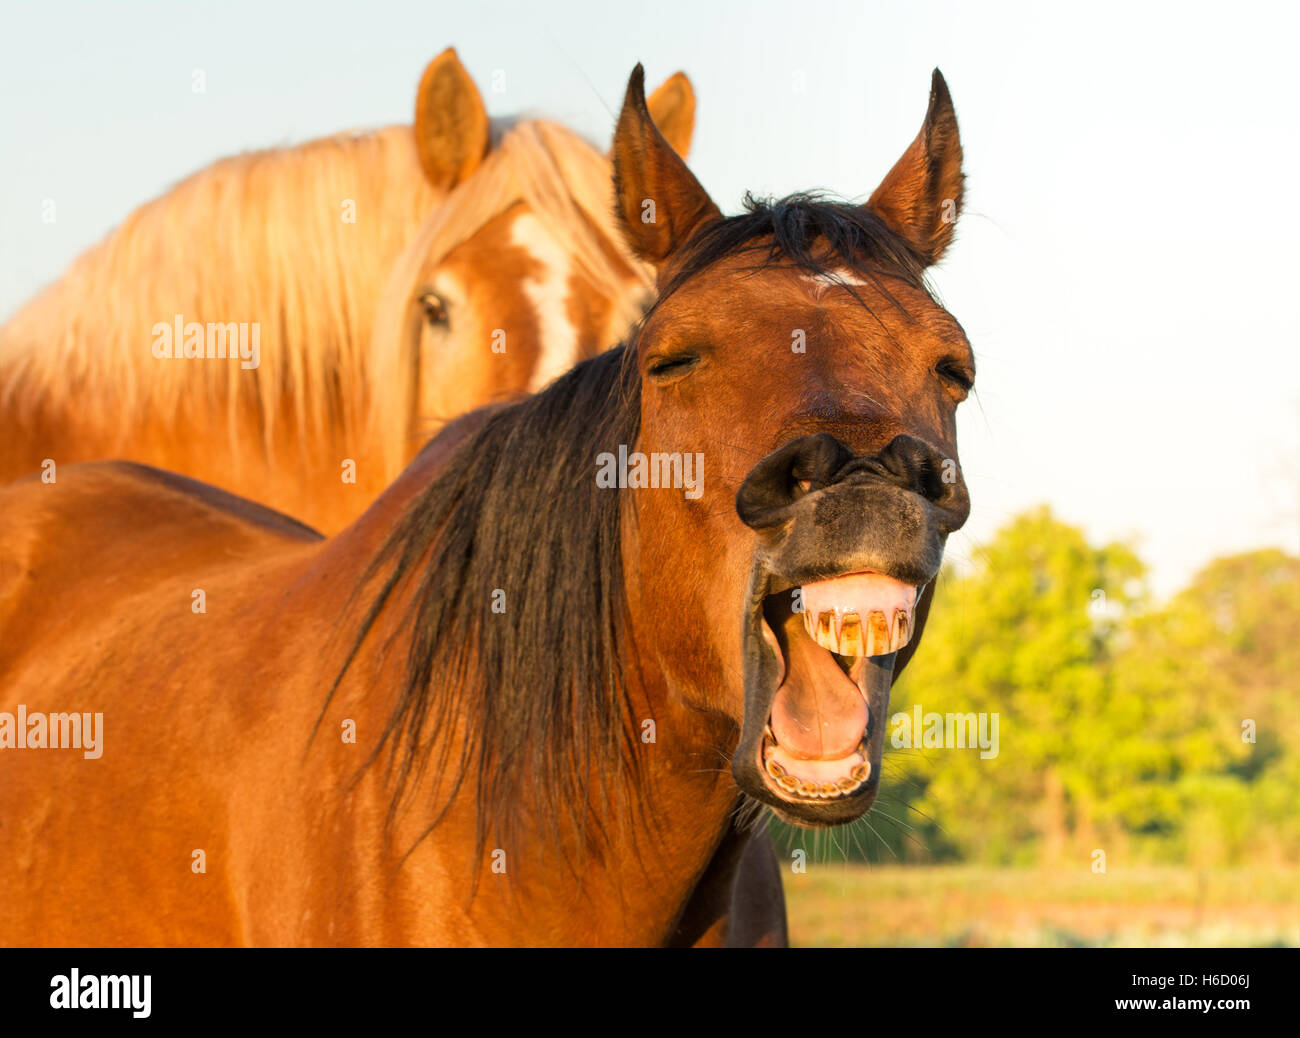 Red Bay horse bâillements, à la recherche comme il rit, avec un autre cheval sur l'arrière-plan Banque D'Images